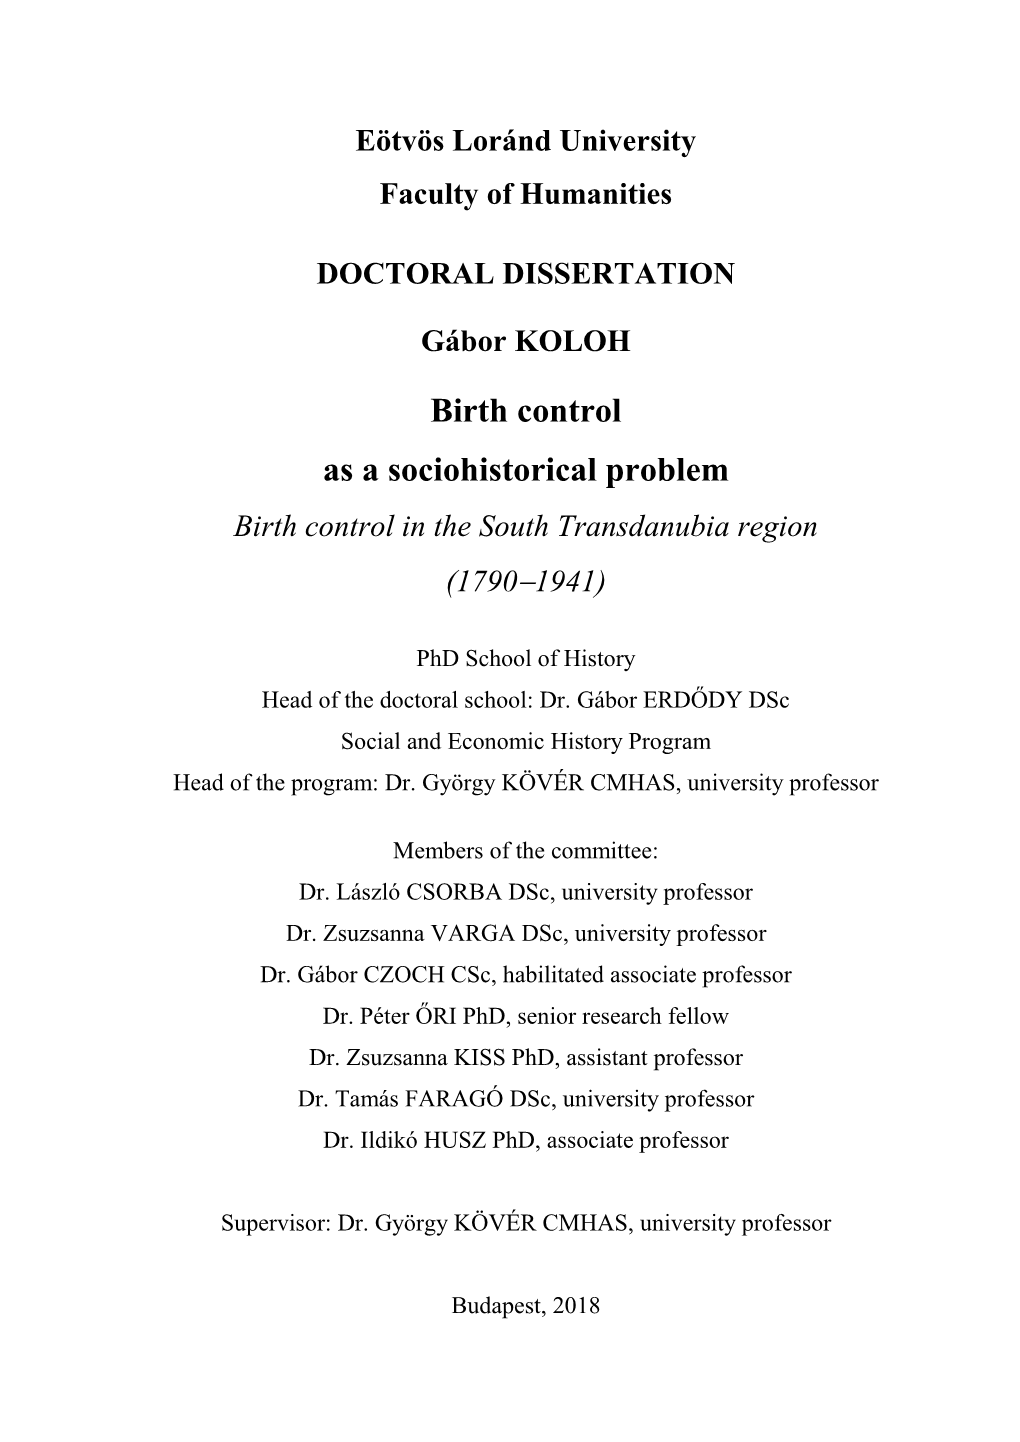 Birth Control As a Sociohistorical Problem Birth Control in the South Transdanubia Region (17901941)